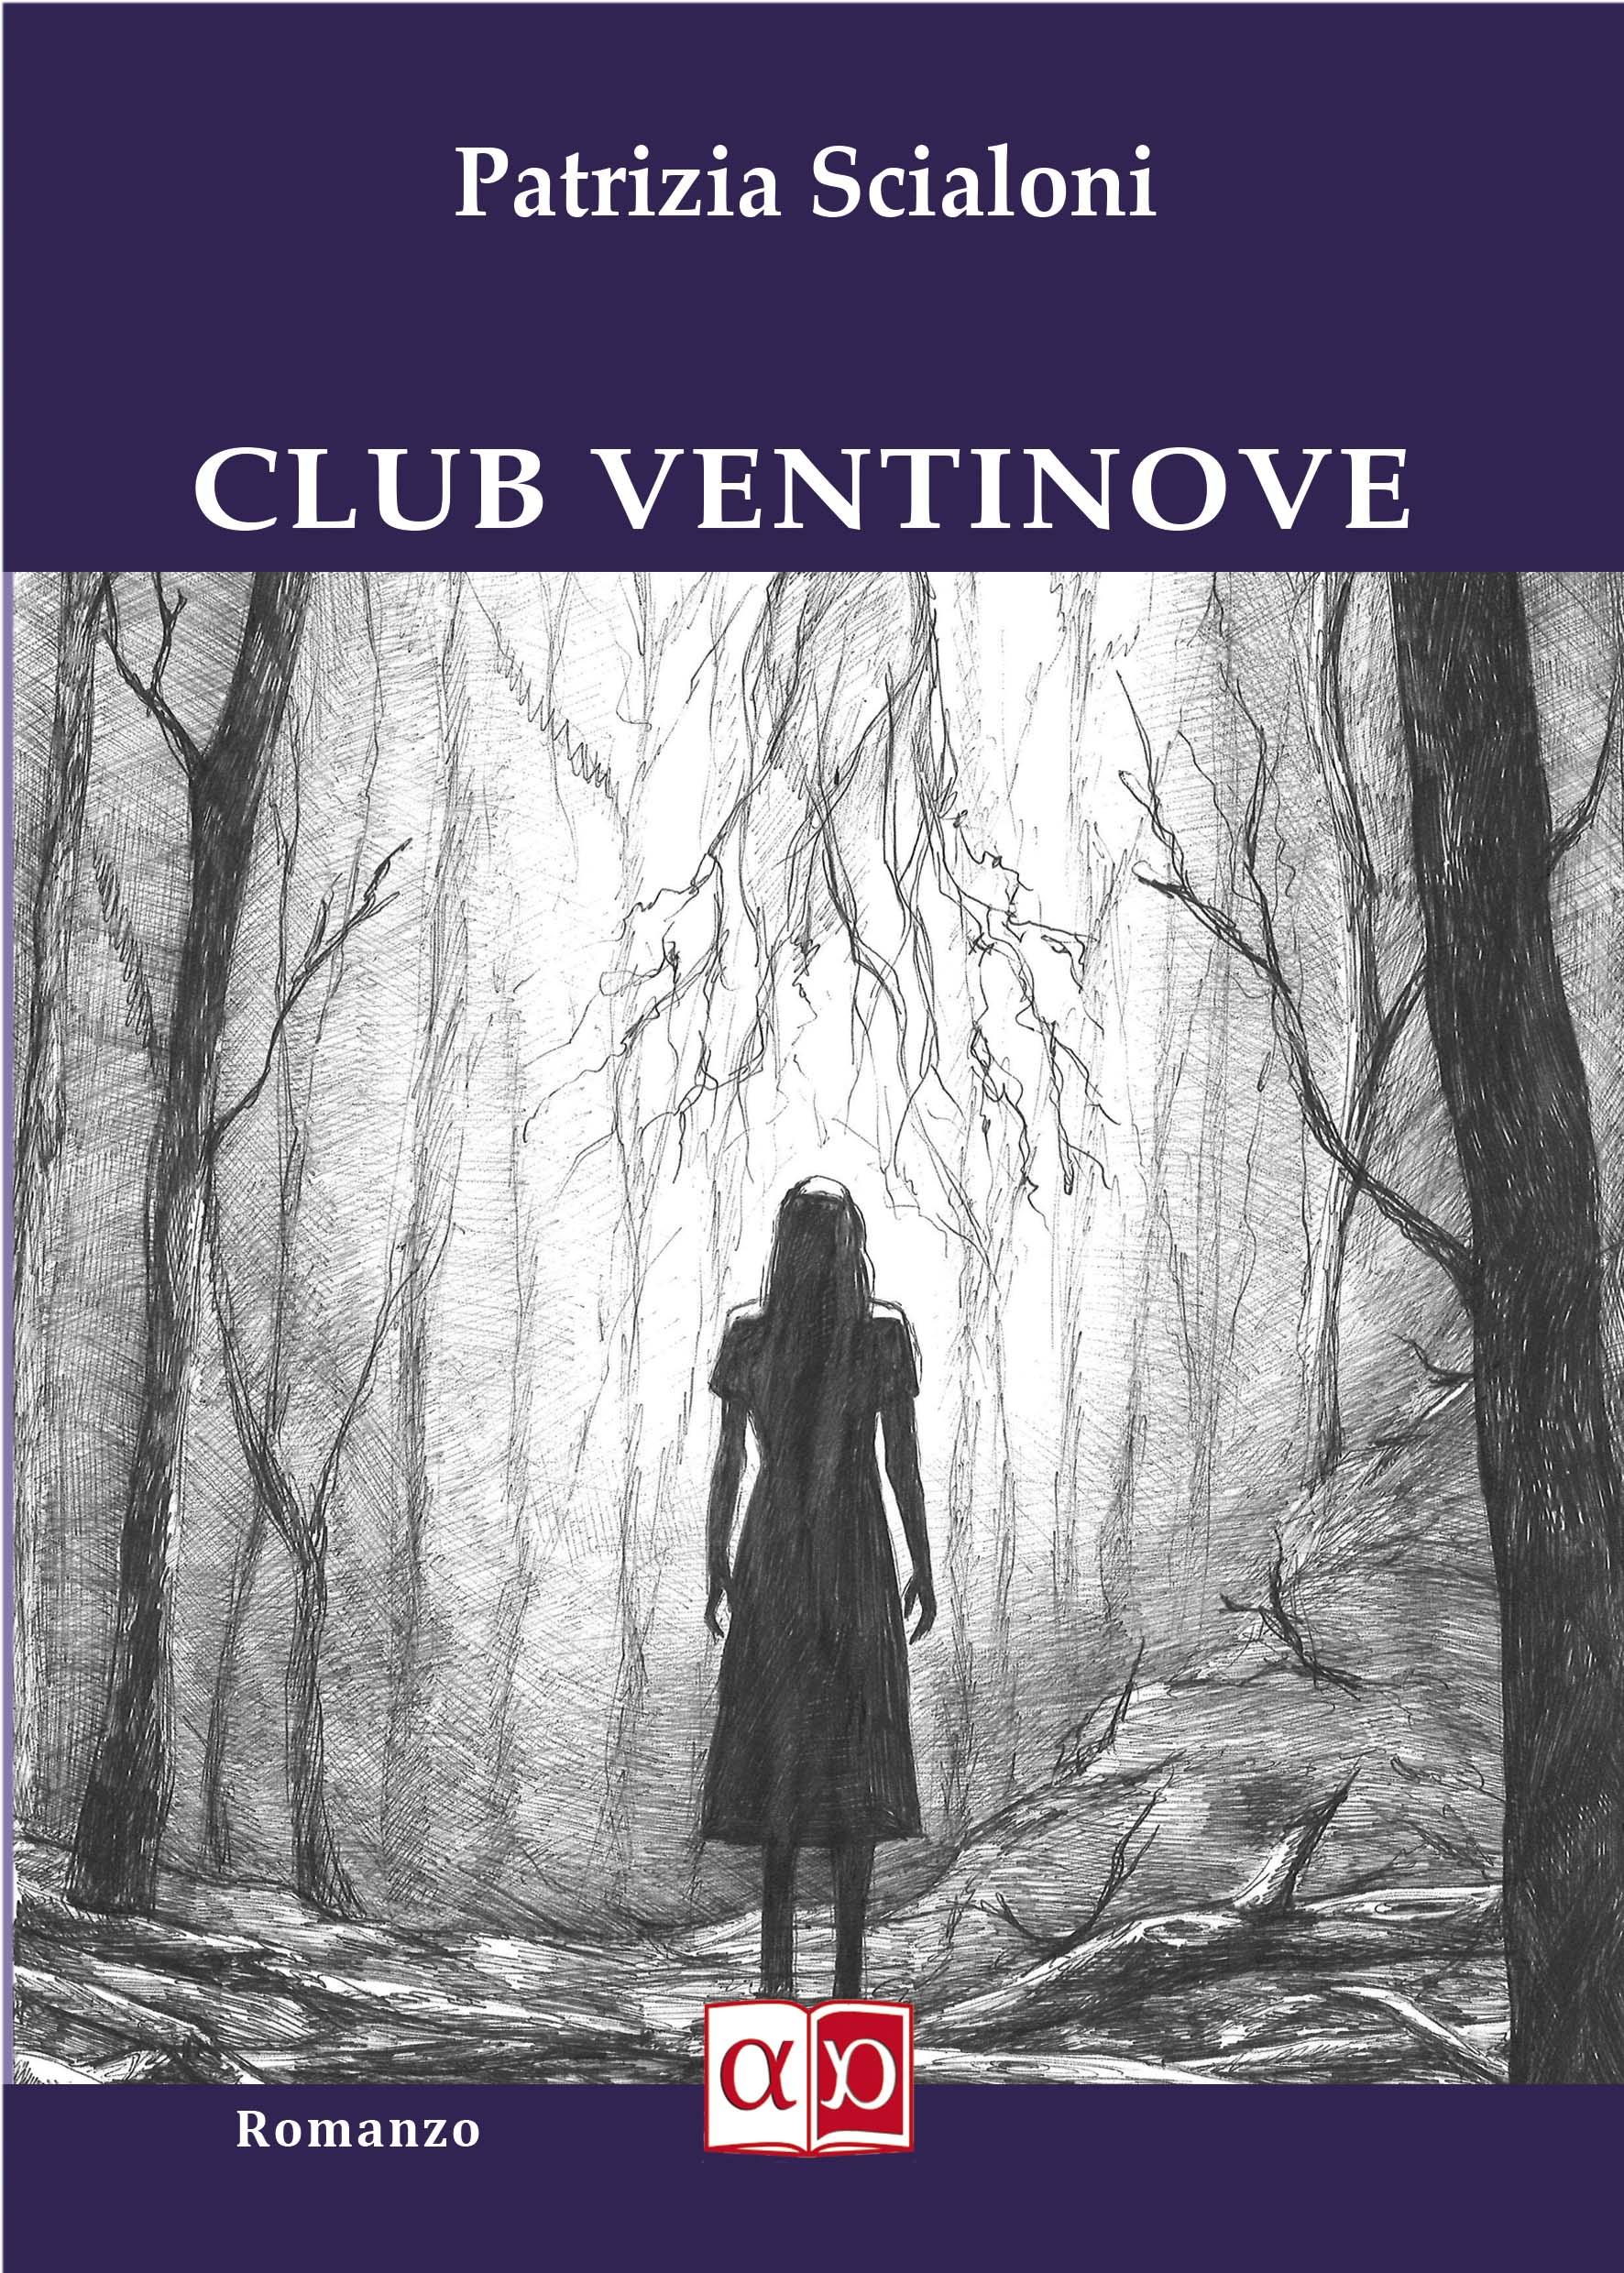 CLUB VENTINOVE - Patrizia Scialoni